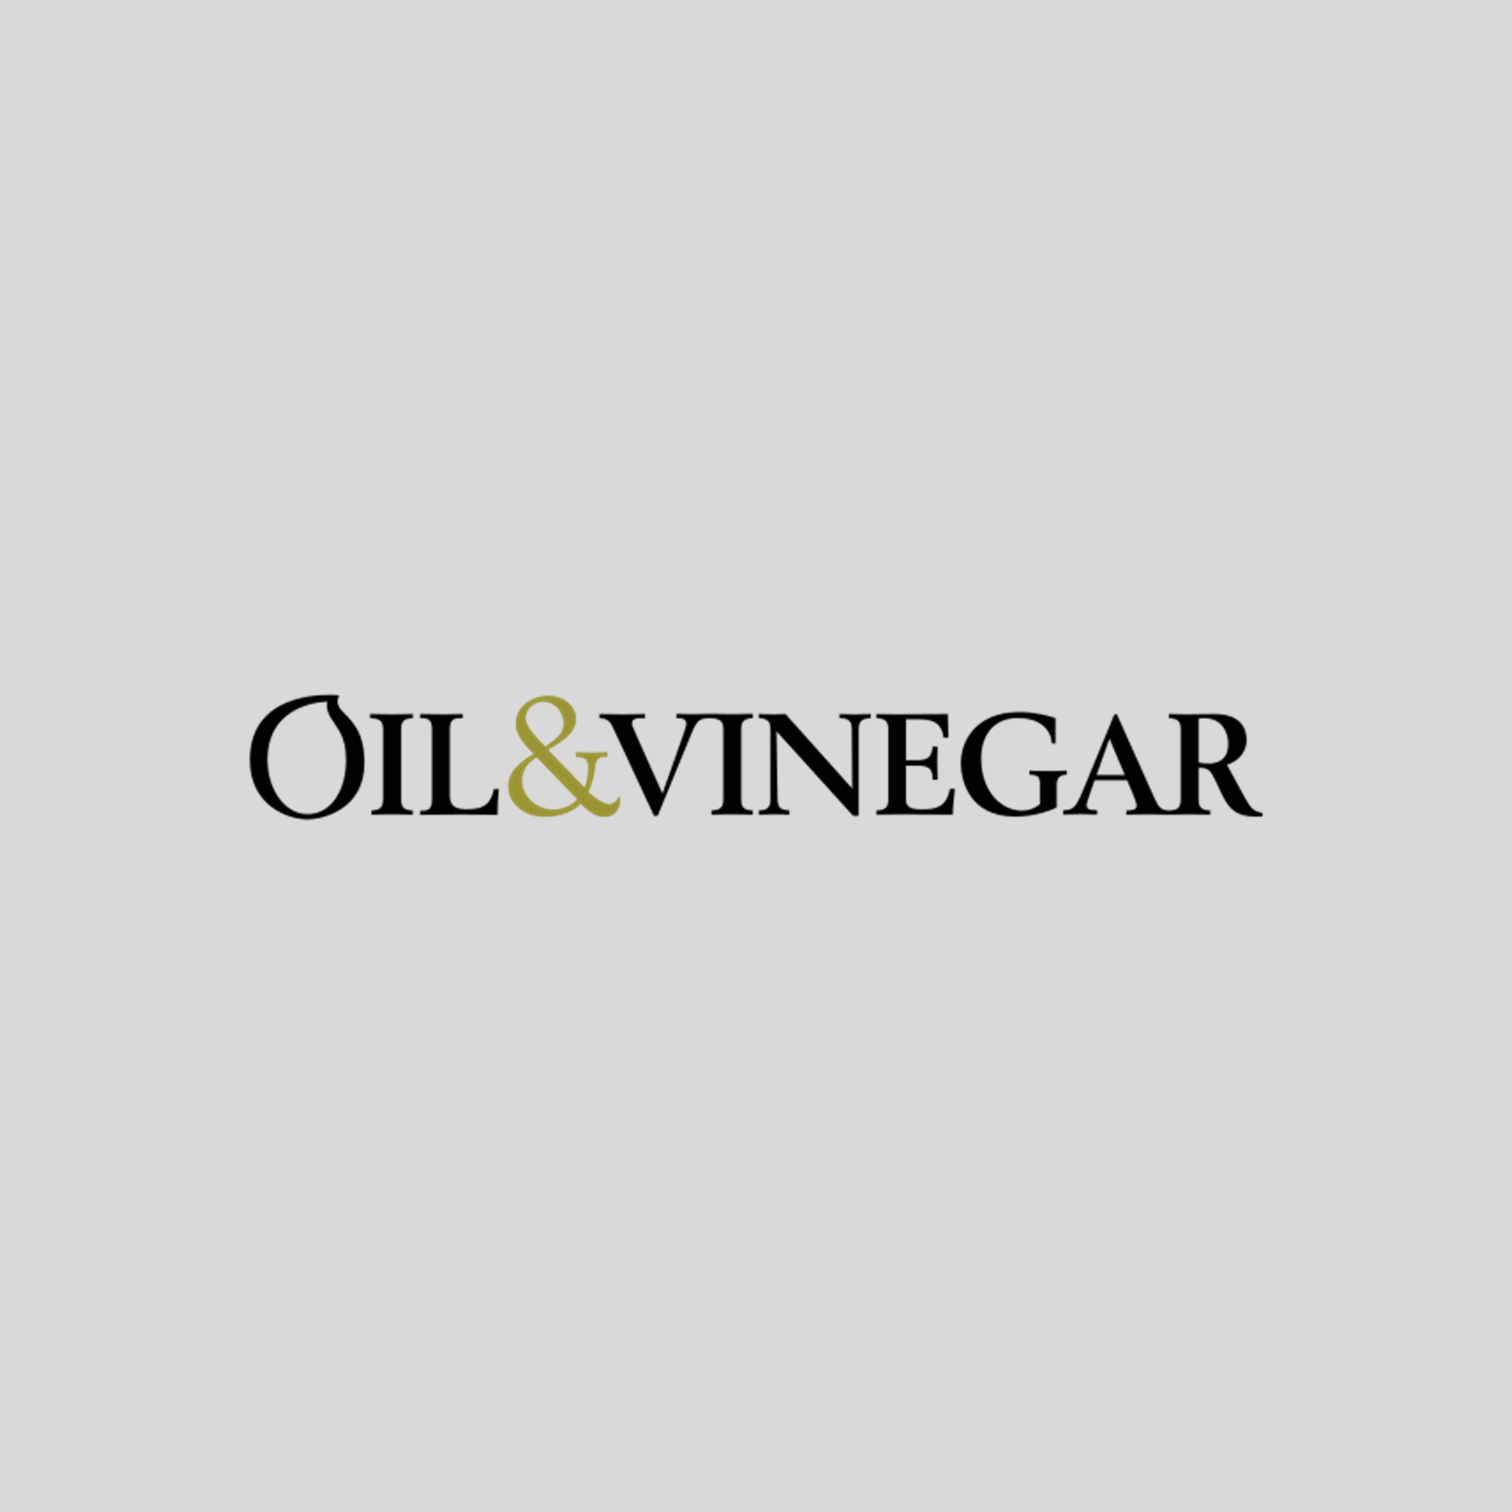 Rosemary Olive Oil & Blackberry Balsamic Vinegar 2x250ml